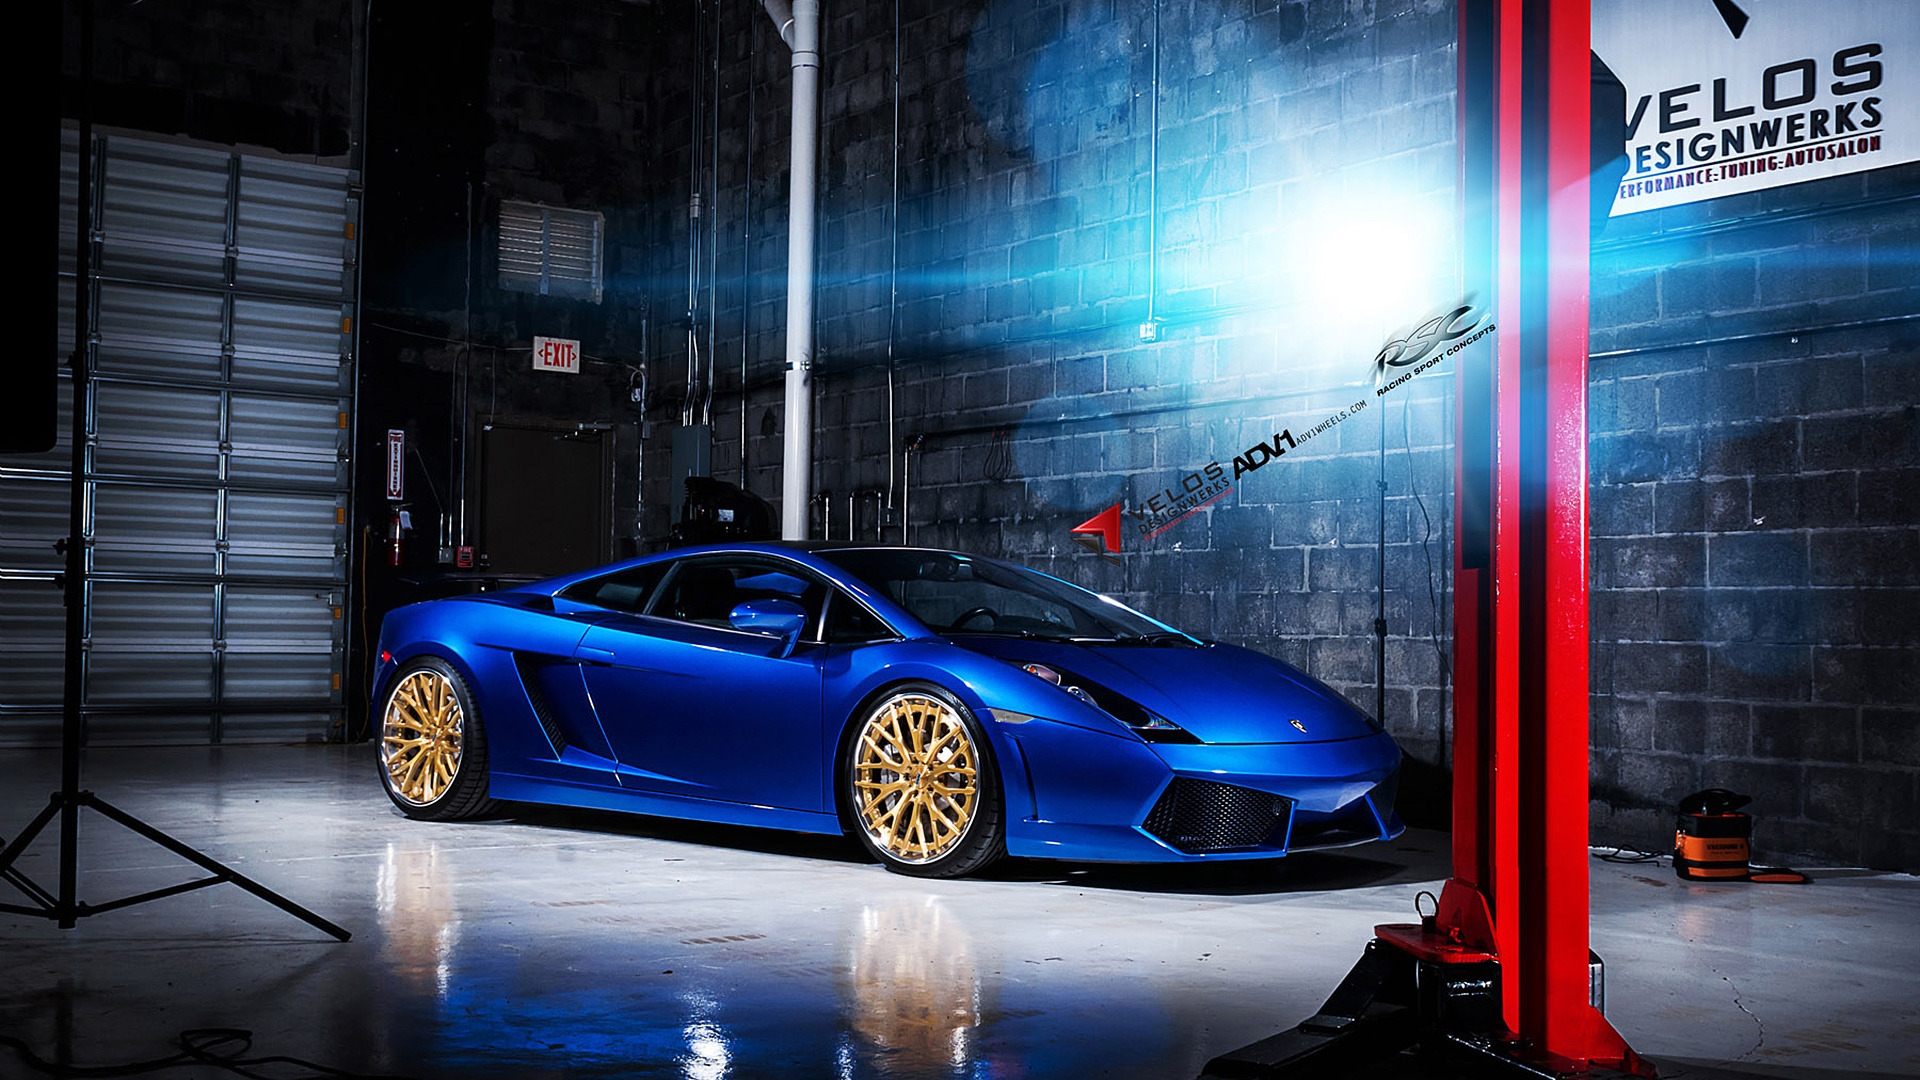 Blue Lamborghini Gallardo ADV10 for 1920 x 1080 HDTV 1080p resolution